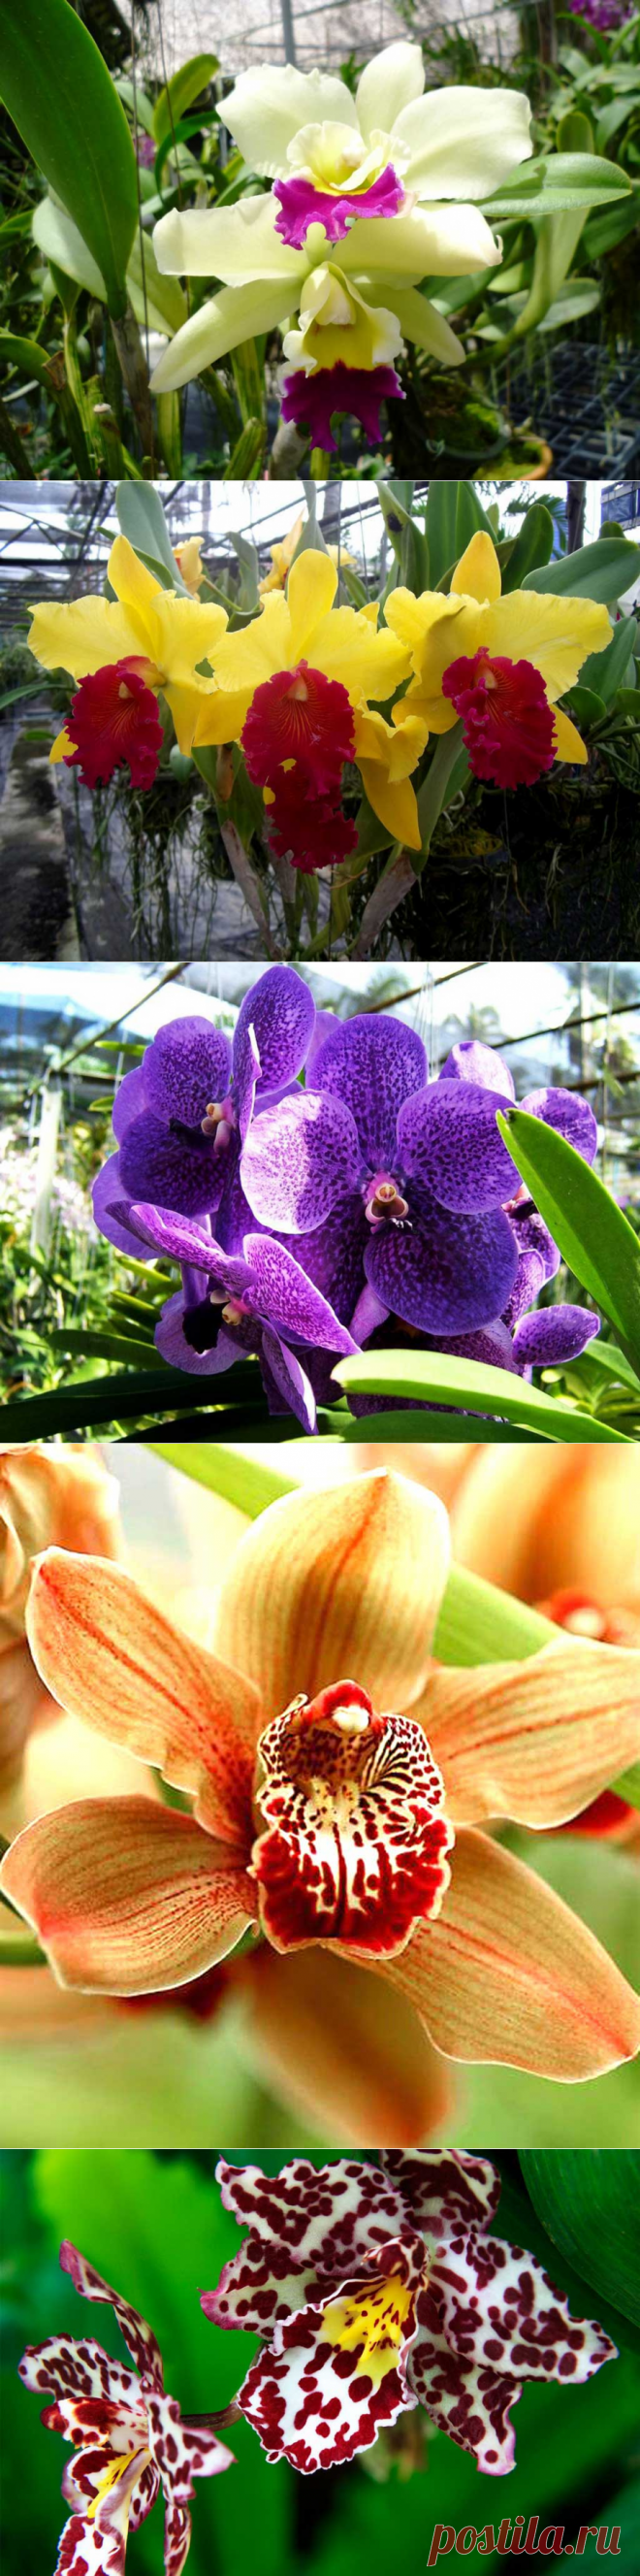 Сад орхидей, Пхукет,  Таиланд
В тропическом саду представлено около 1500 видов орхидей, которые поразят разнообразием окраски, там можно встретить: желто-оранжевые, фиолетовые, ярко-красные, розовые, бело-красные, в крапинку и многие- многие другие. Здесь можно узнать о происхождении и секретах выращивания этих невероятно красивых цветов, и даже можно купить саженцы любого из представленных видов орхидей.